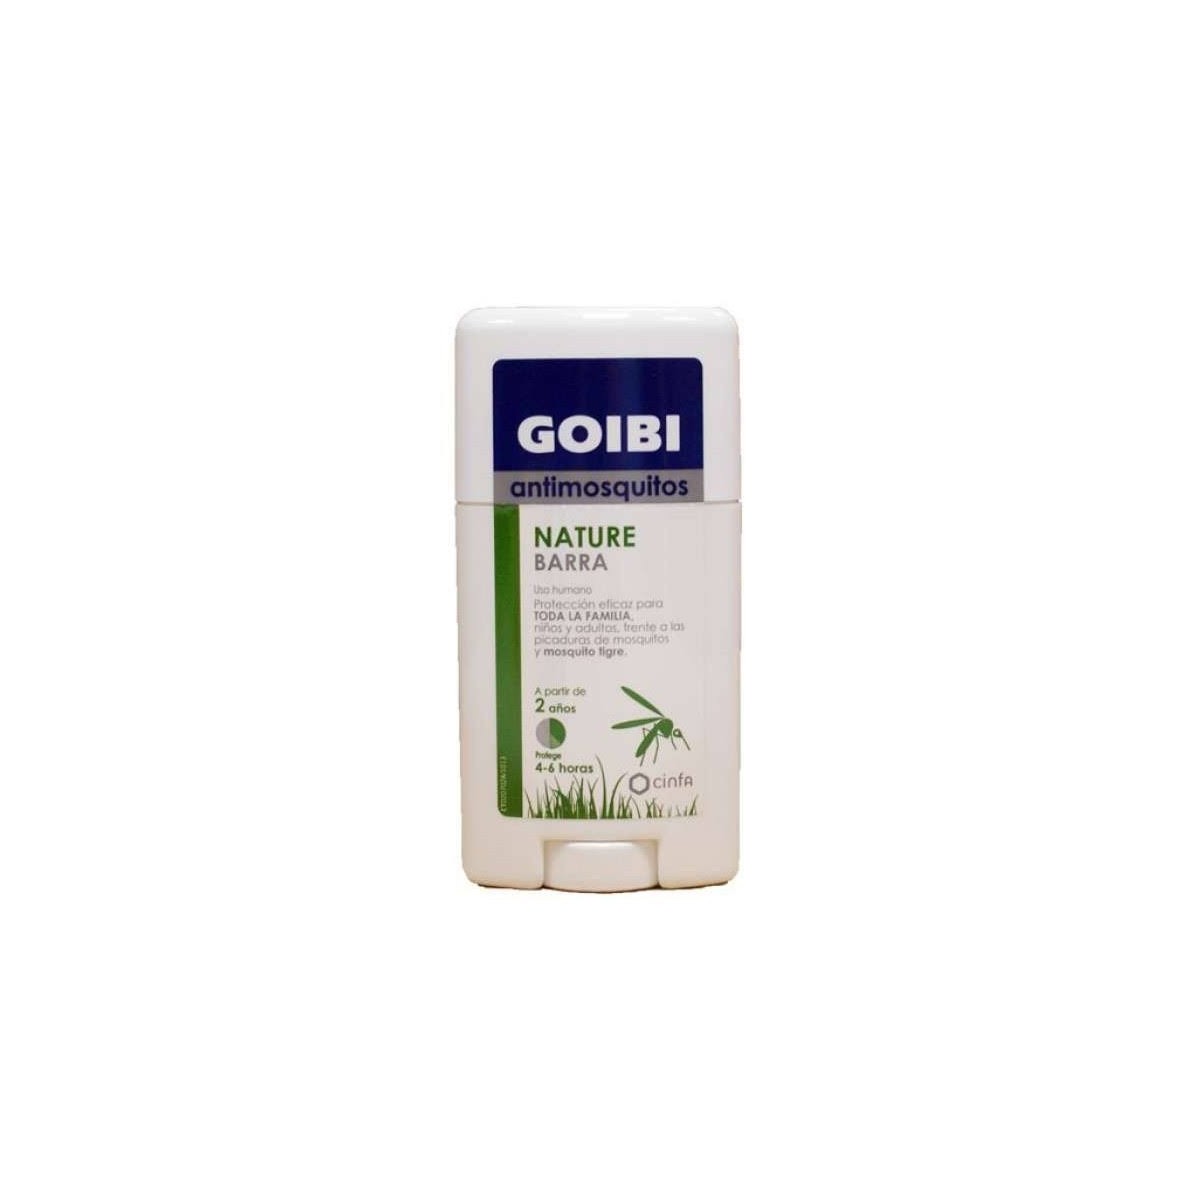 goibi-nature-barra-antimosquitos-50-ml